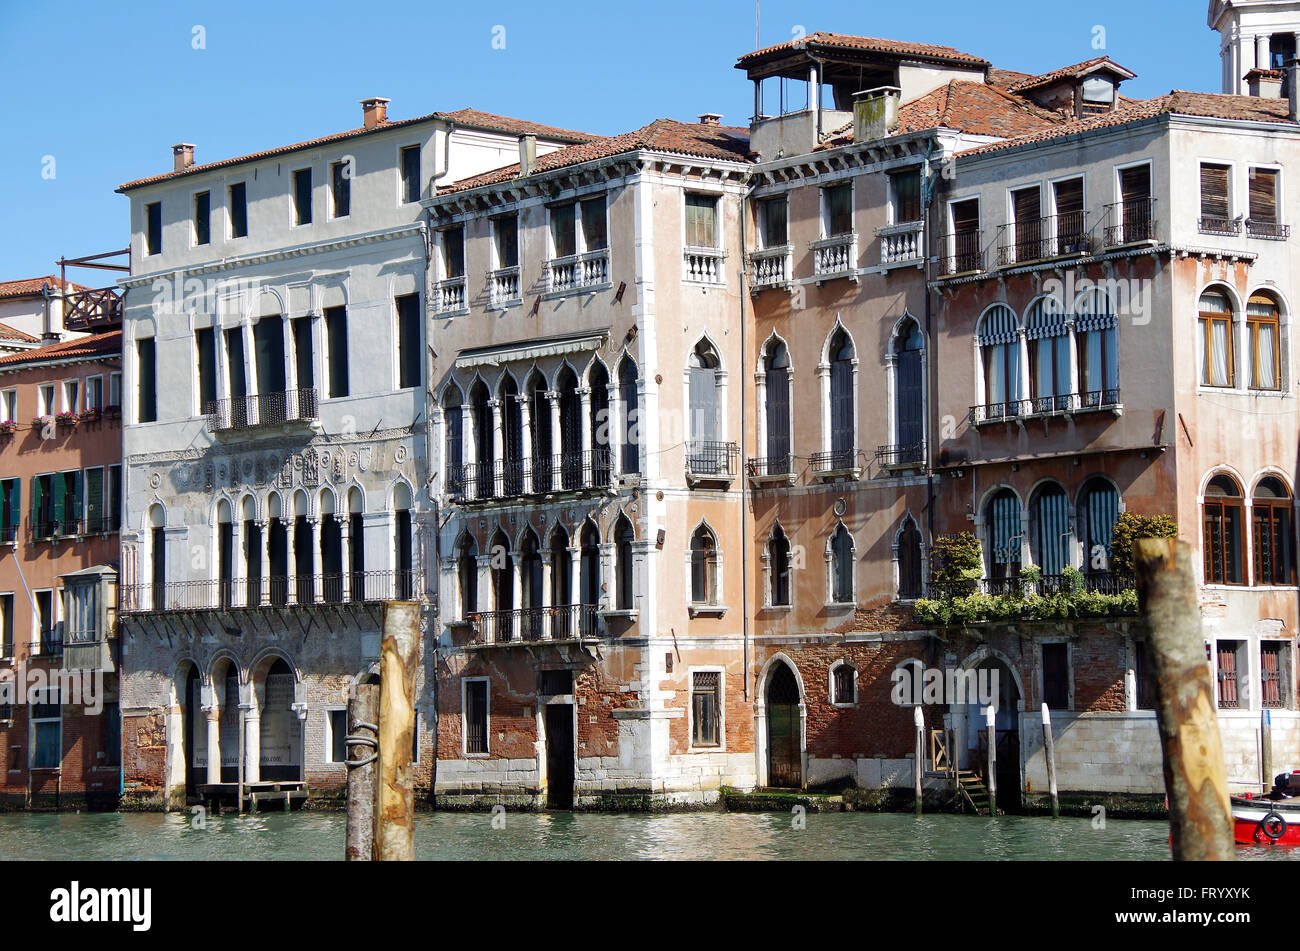 Ca' da Mosto, Grand Canal, Venezia, Italia Foto Stock